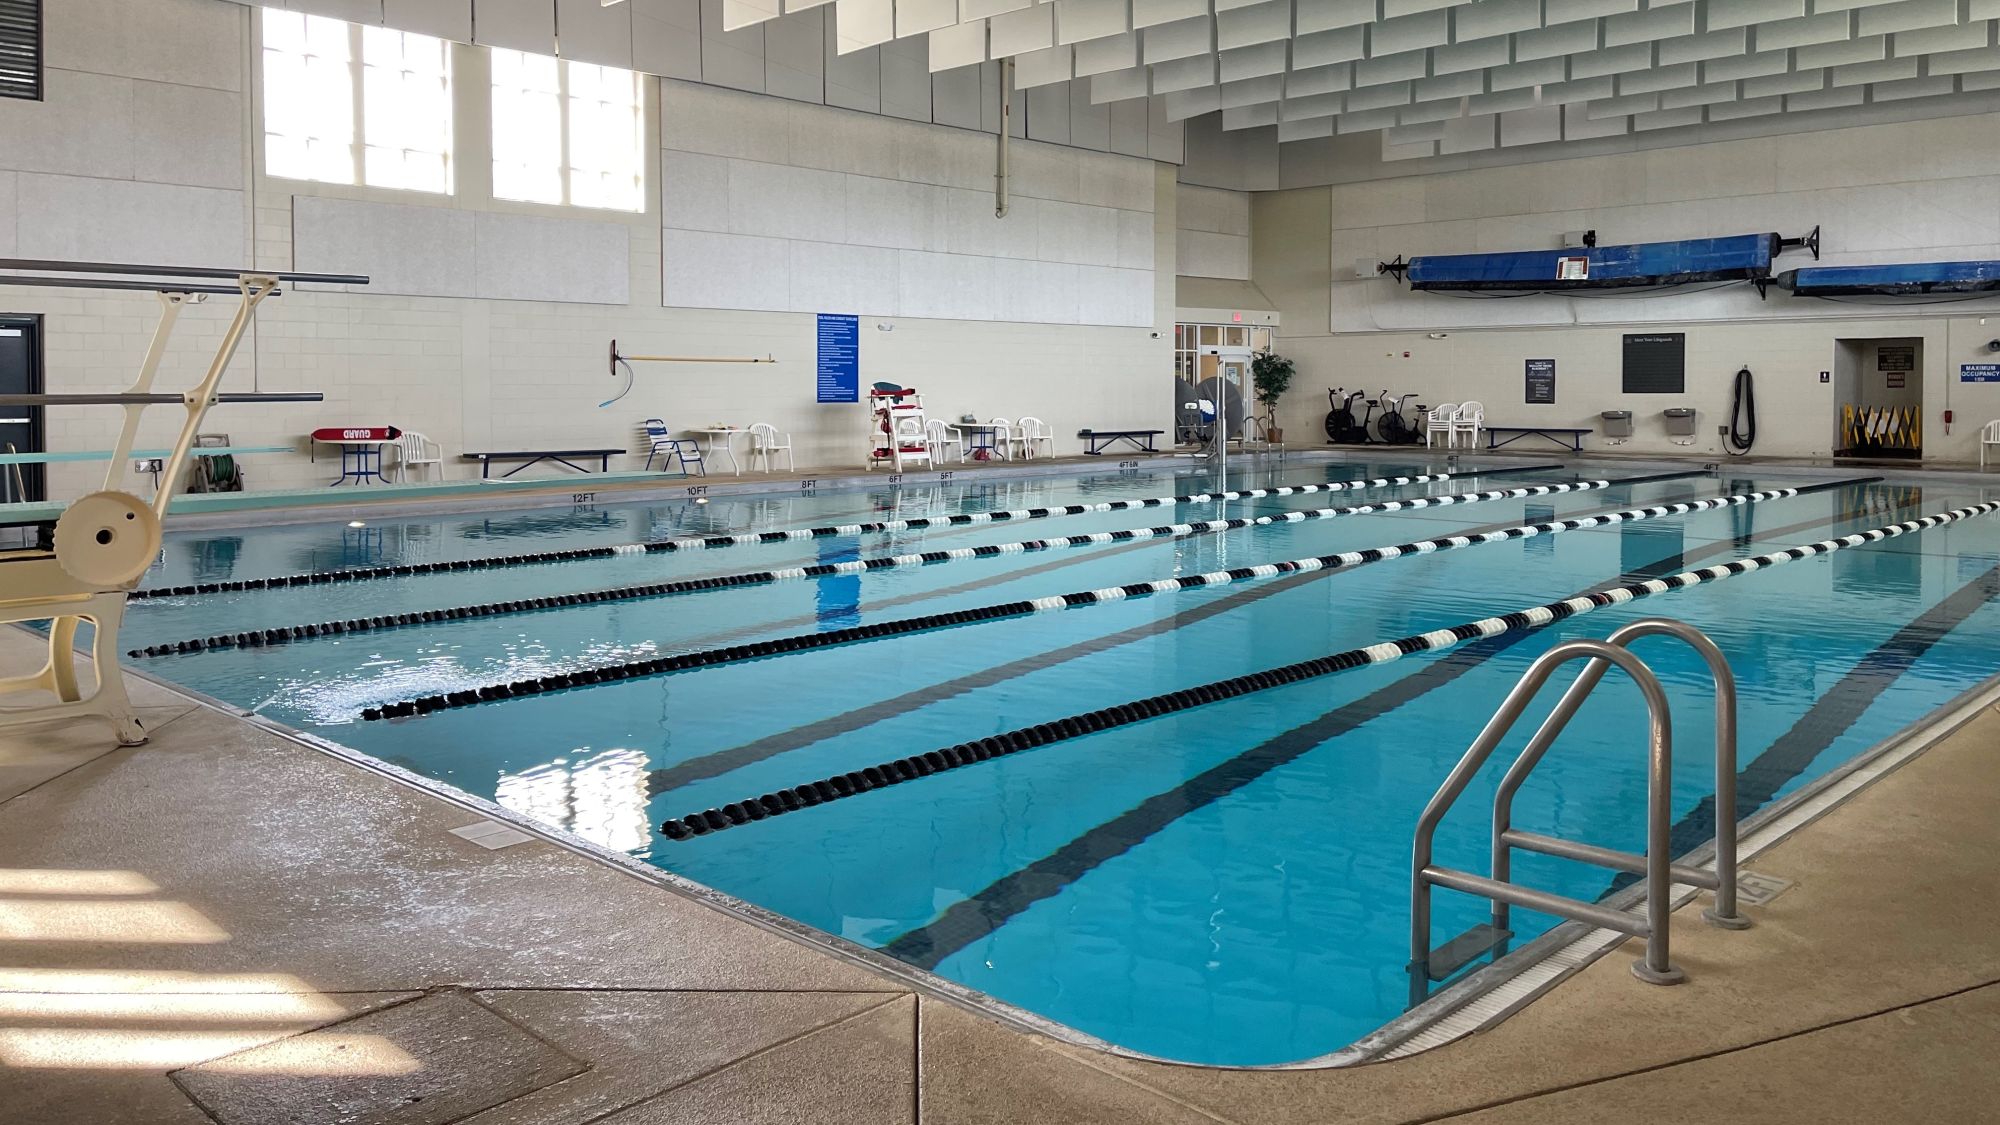 Advierten de que la piscina de Teis no se abrirá hasta 2026